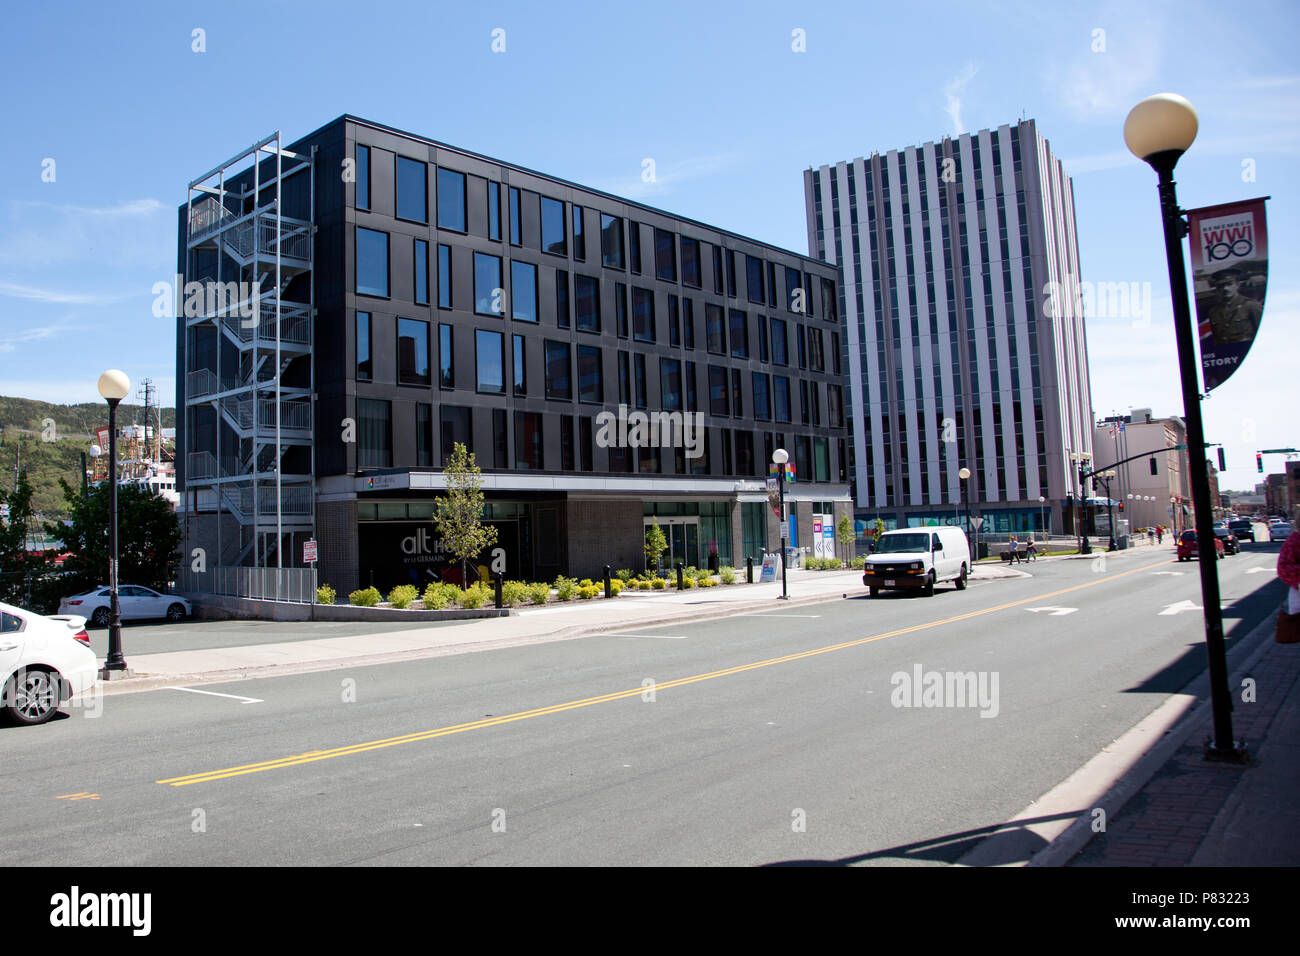 23 juin 2018- Saint John's, Terre-Neuve : l'hôtel ALT, nouvellement construite sur la rue Water, centre-ville Banque D'Images